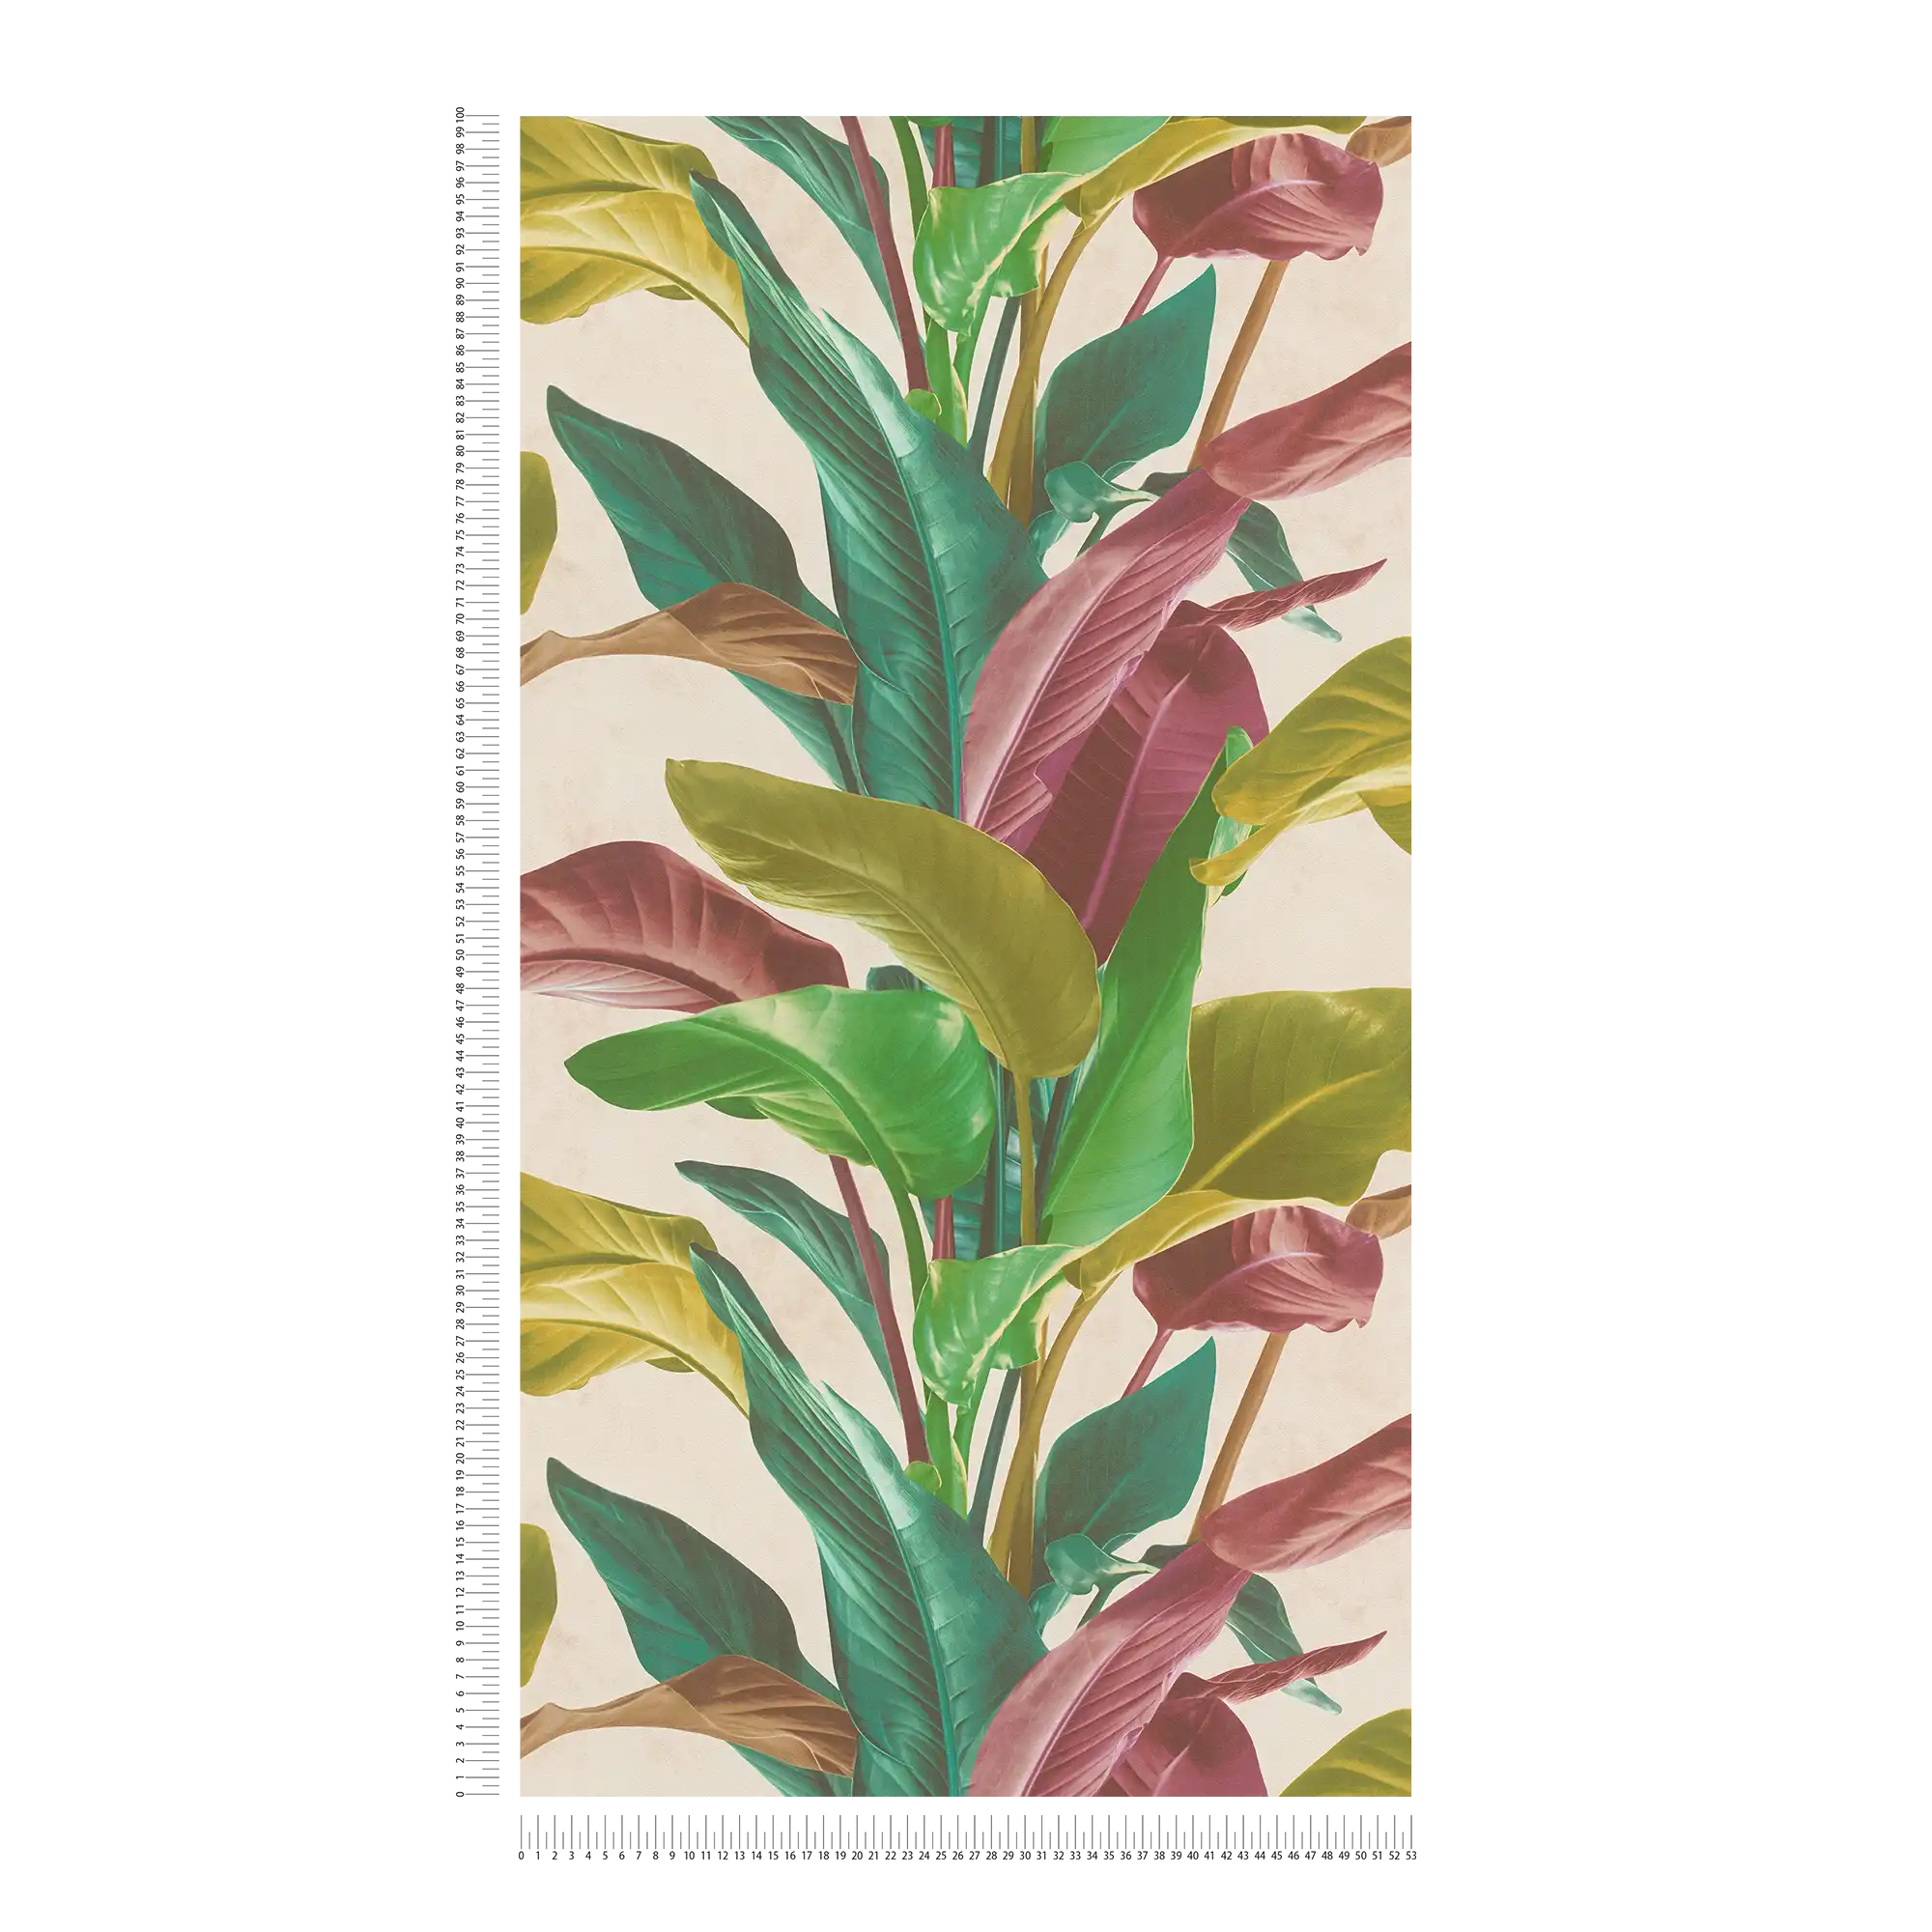             Papier peint à motif de feuilles aux couleurs vives - multicolore, crème, vert
        